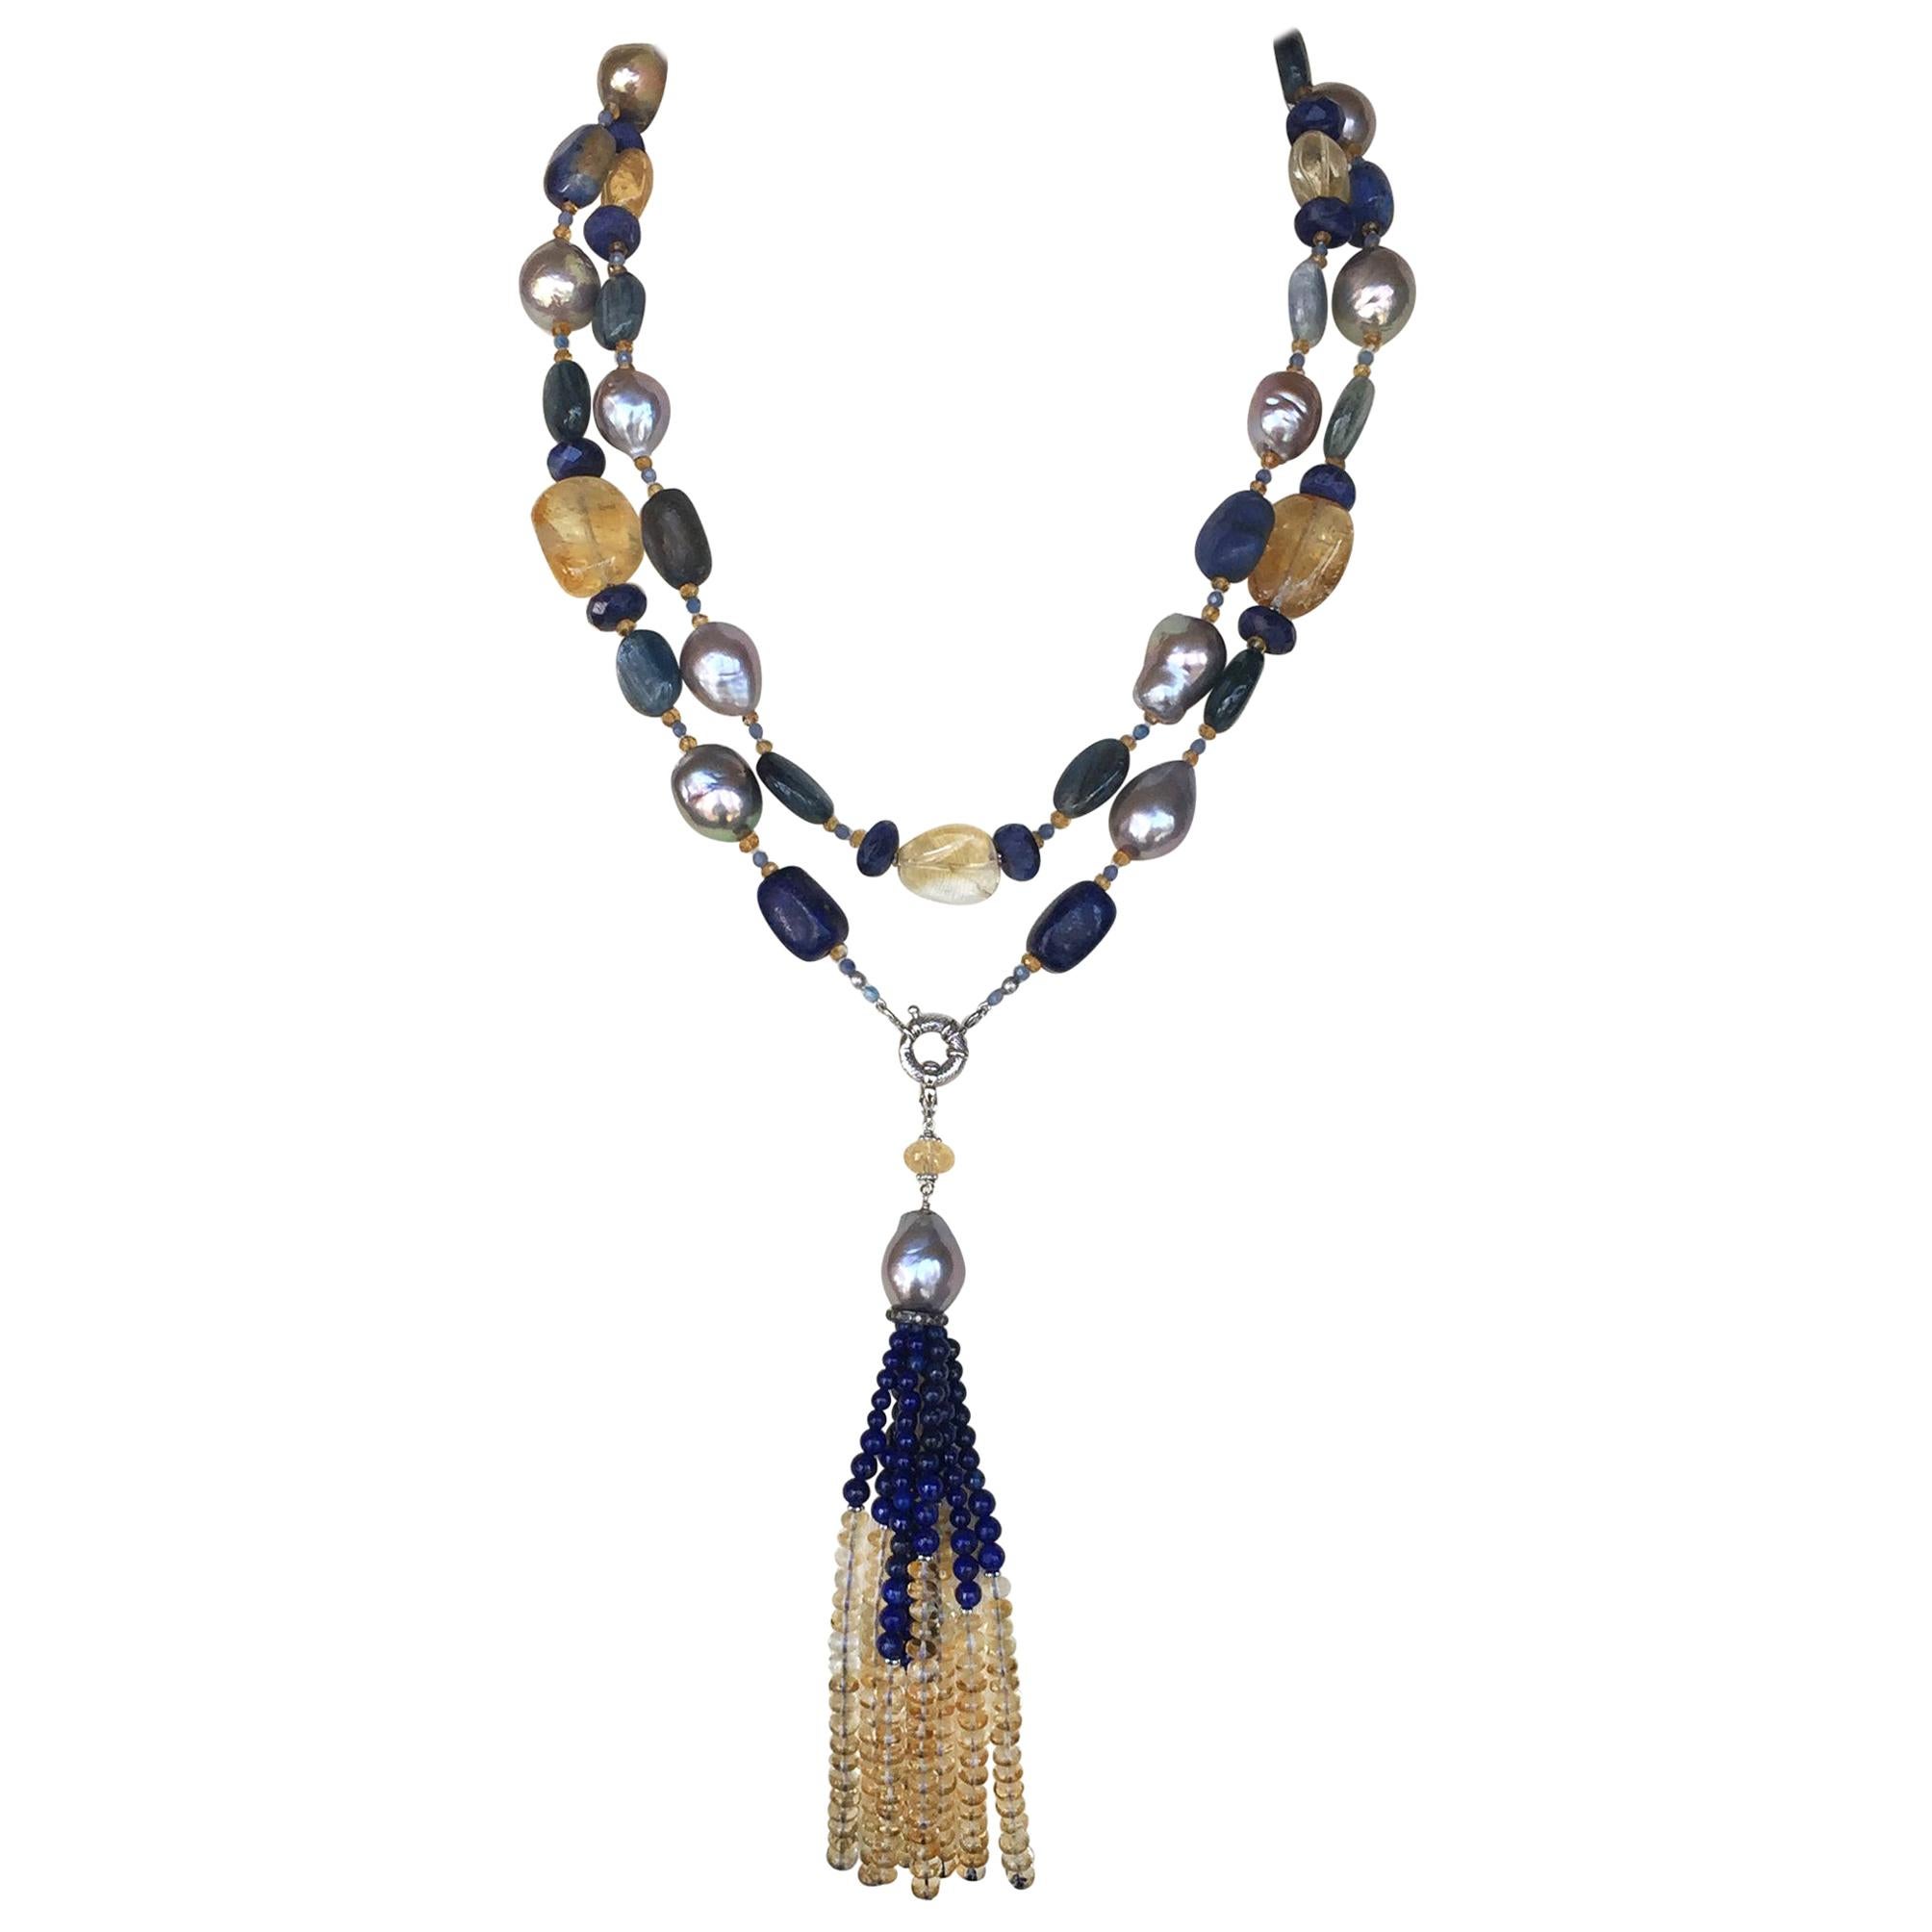 Marina J. Grey Pearl and Semiprecious Stones Sautoir Necklace with 14 Karat Gold